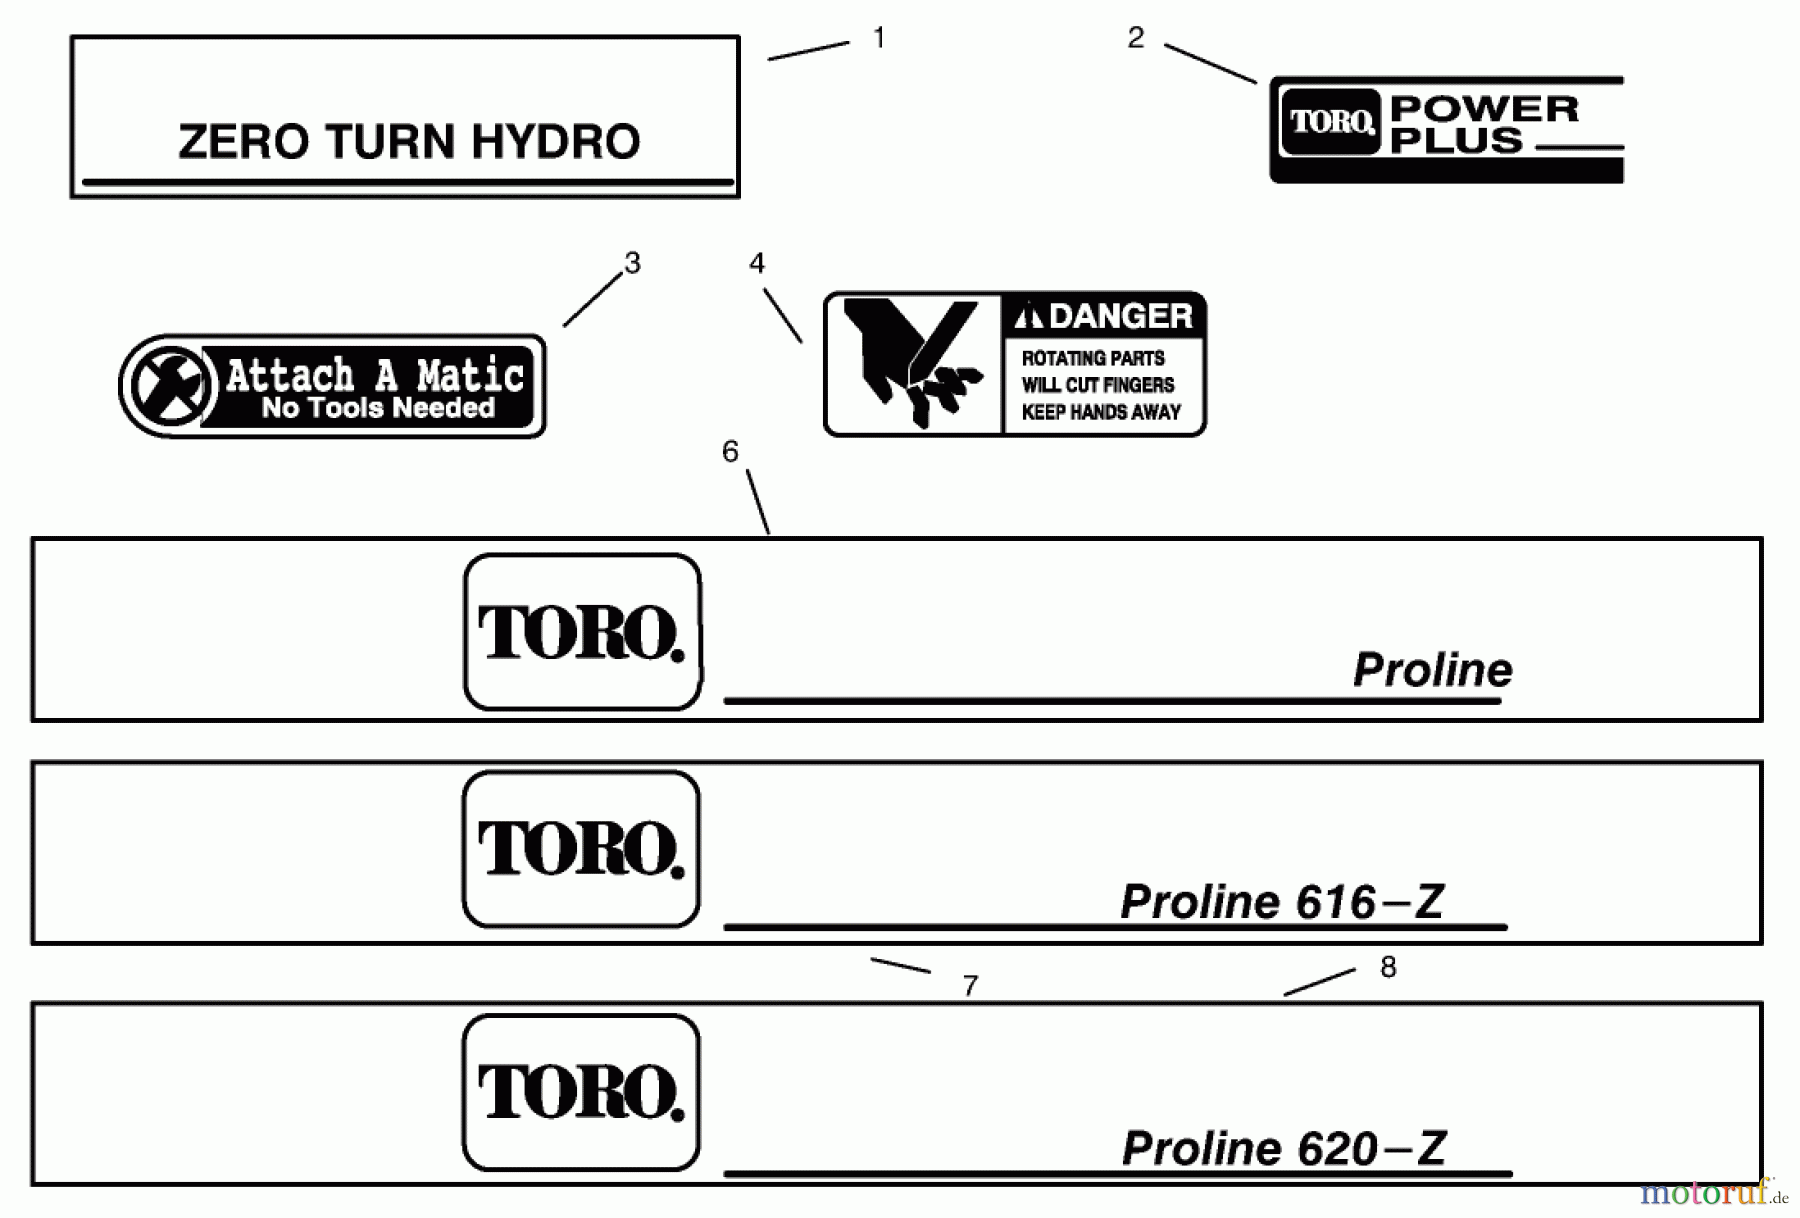  Toro Neu Mowers, Zero-Turn 74120 (616-Z) - Toro 616-Z Tractor, 1994 (490001-499999) DECALS #2